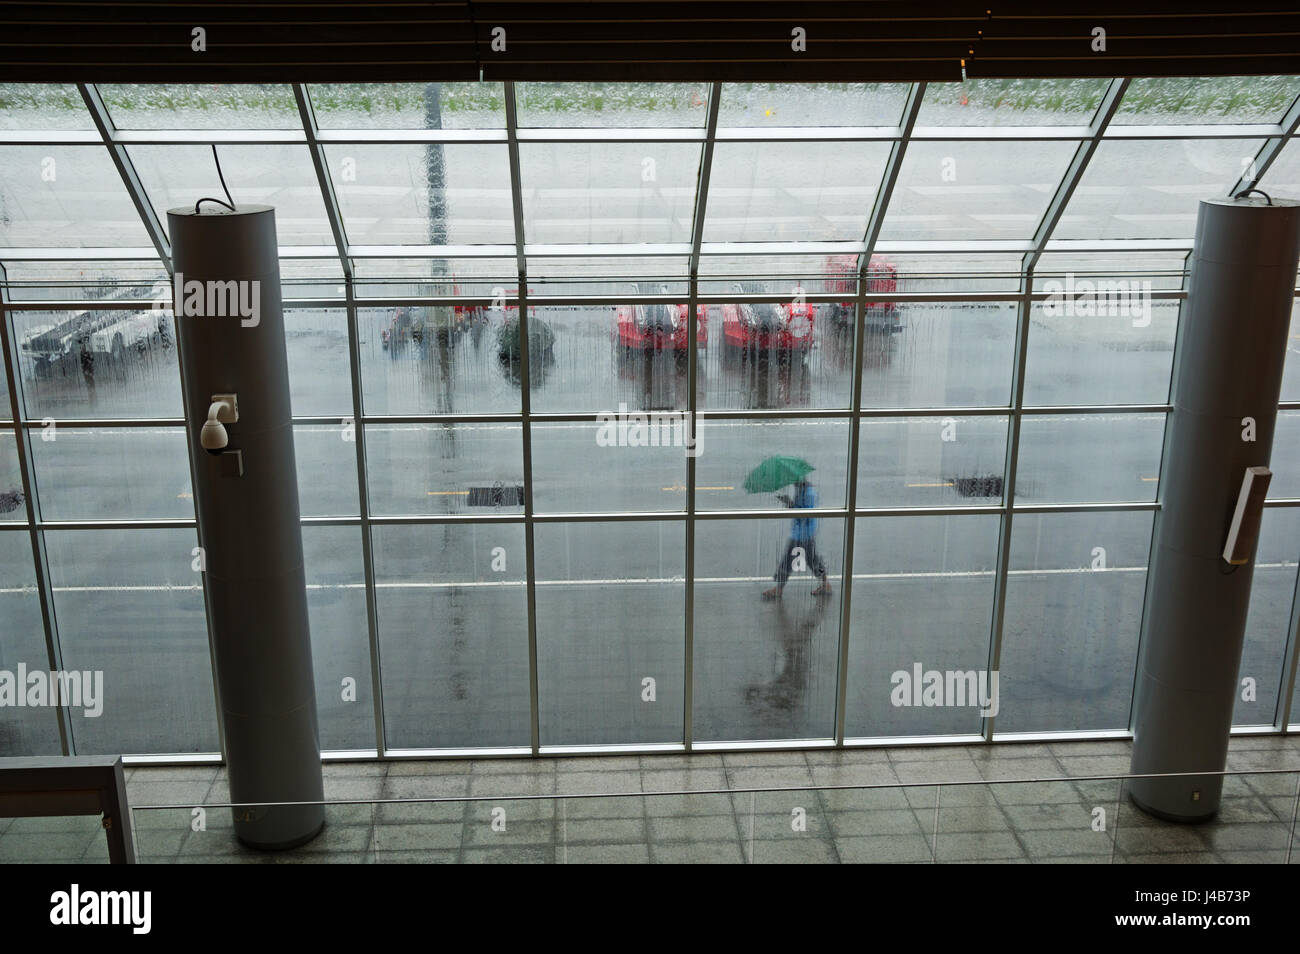 À l'aéroport en direction d'une fenêtre sur un jour de pluie avec une personne qui marche par l'extérieur avec parapluie Banque D'Images